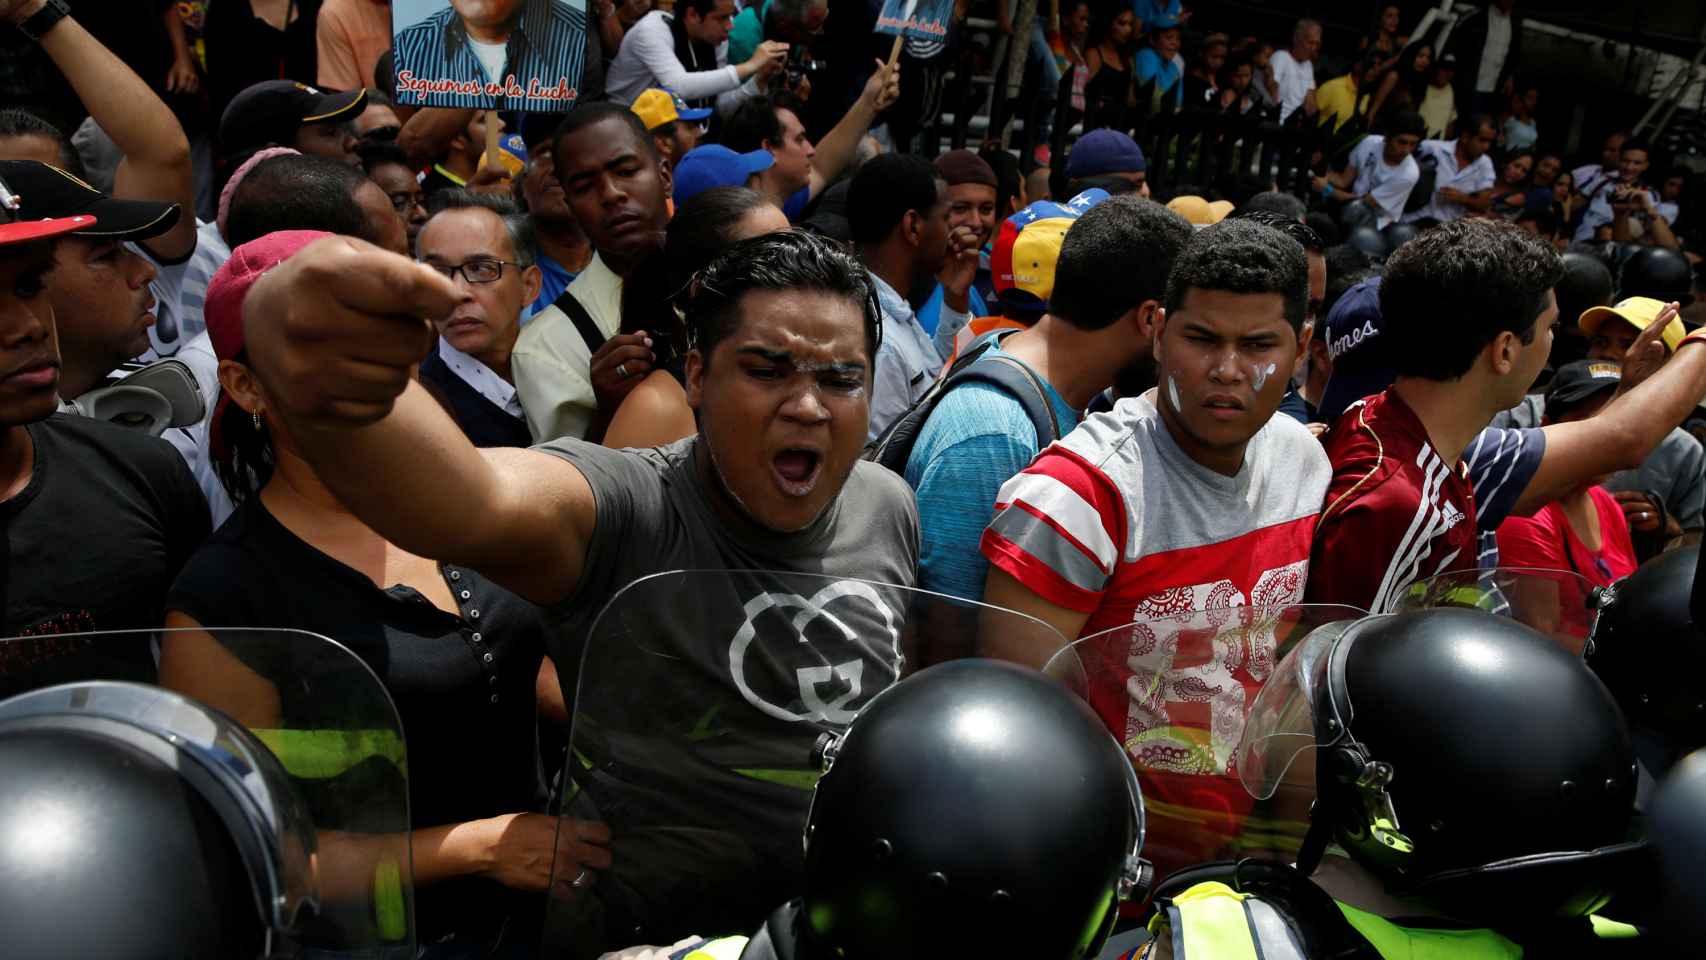 Represión y violencia en la manifestación contra Maduro